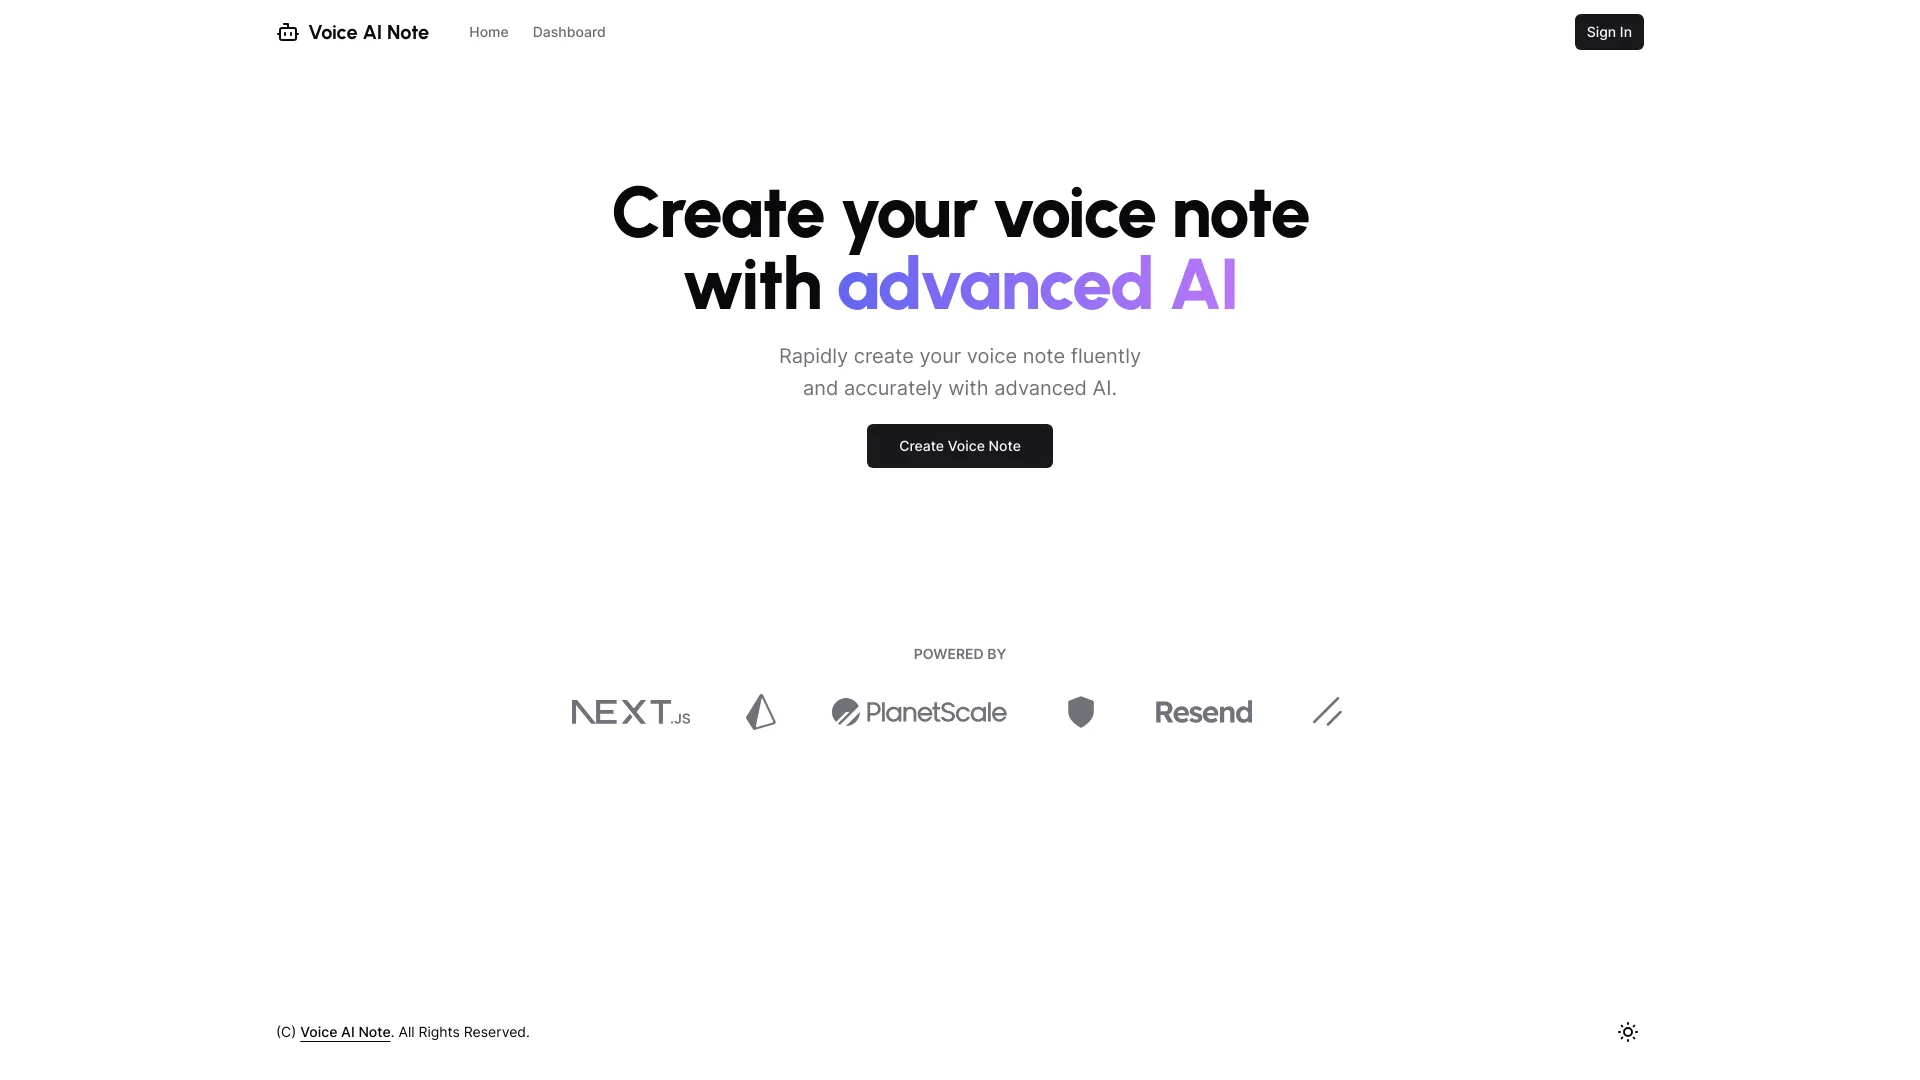 Voice AI Note